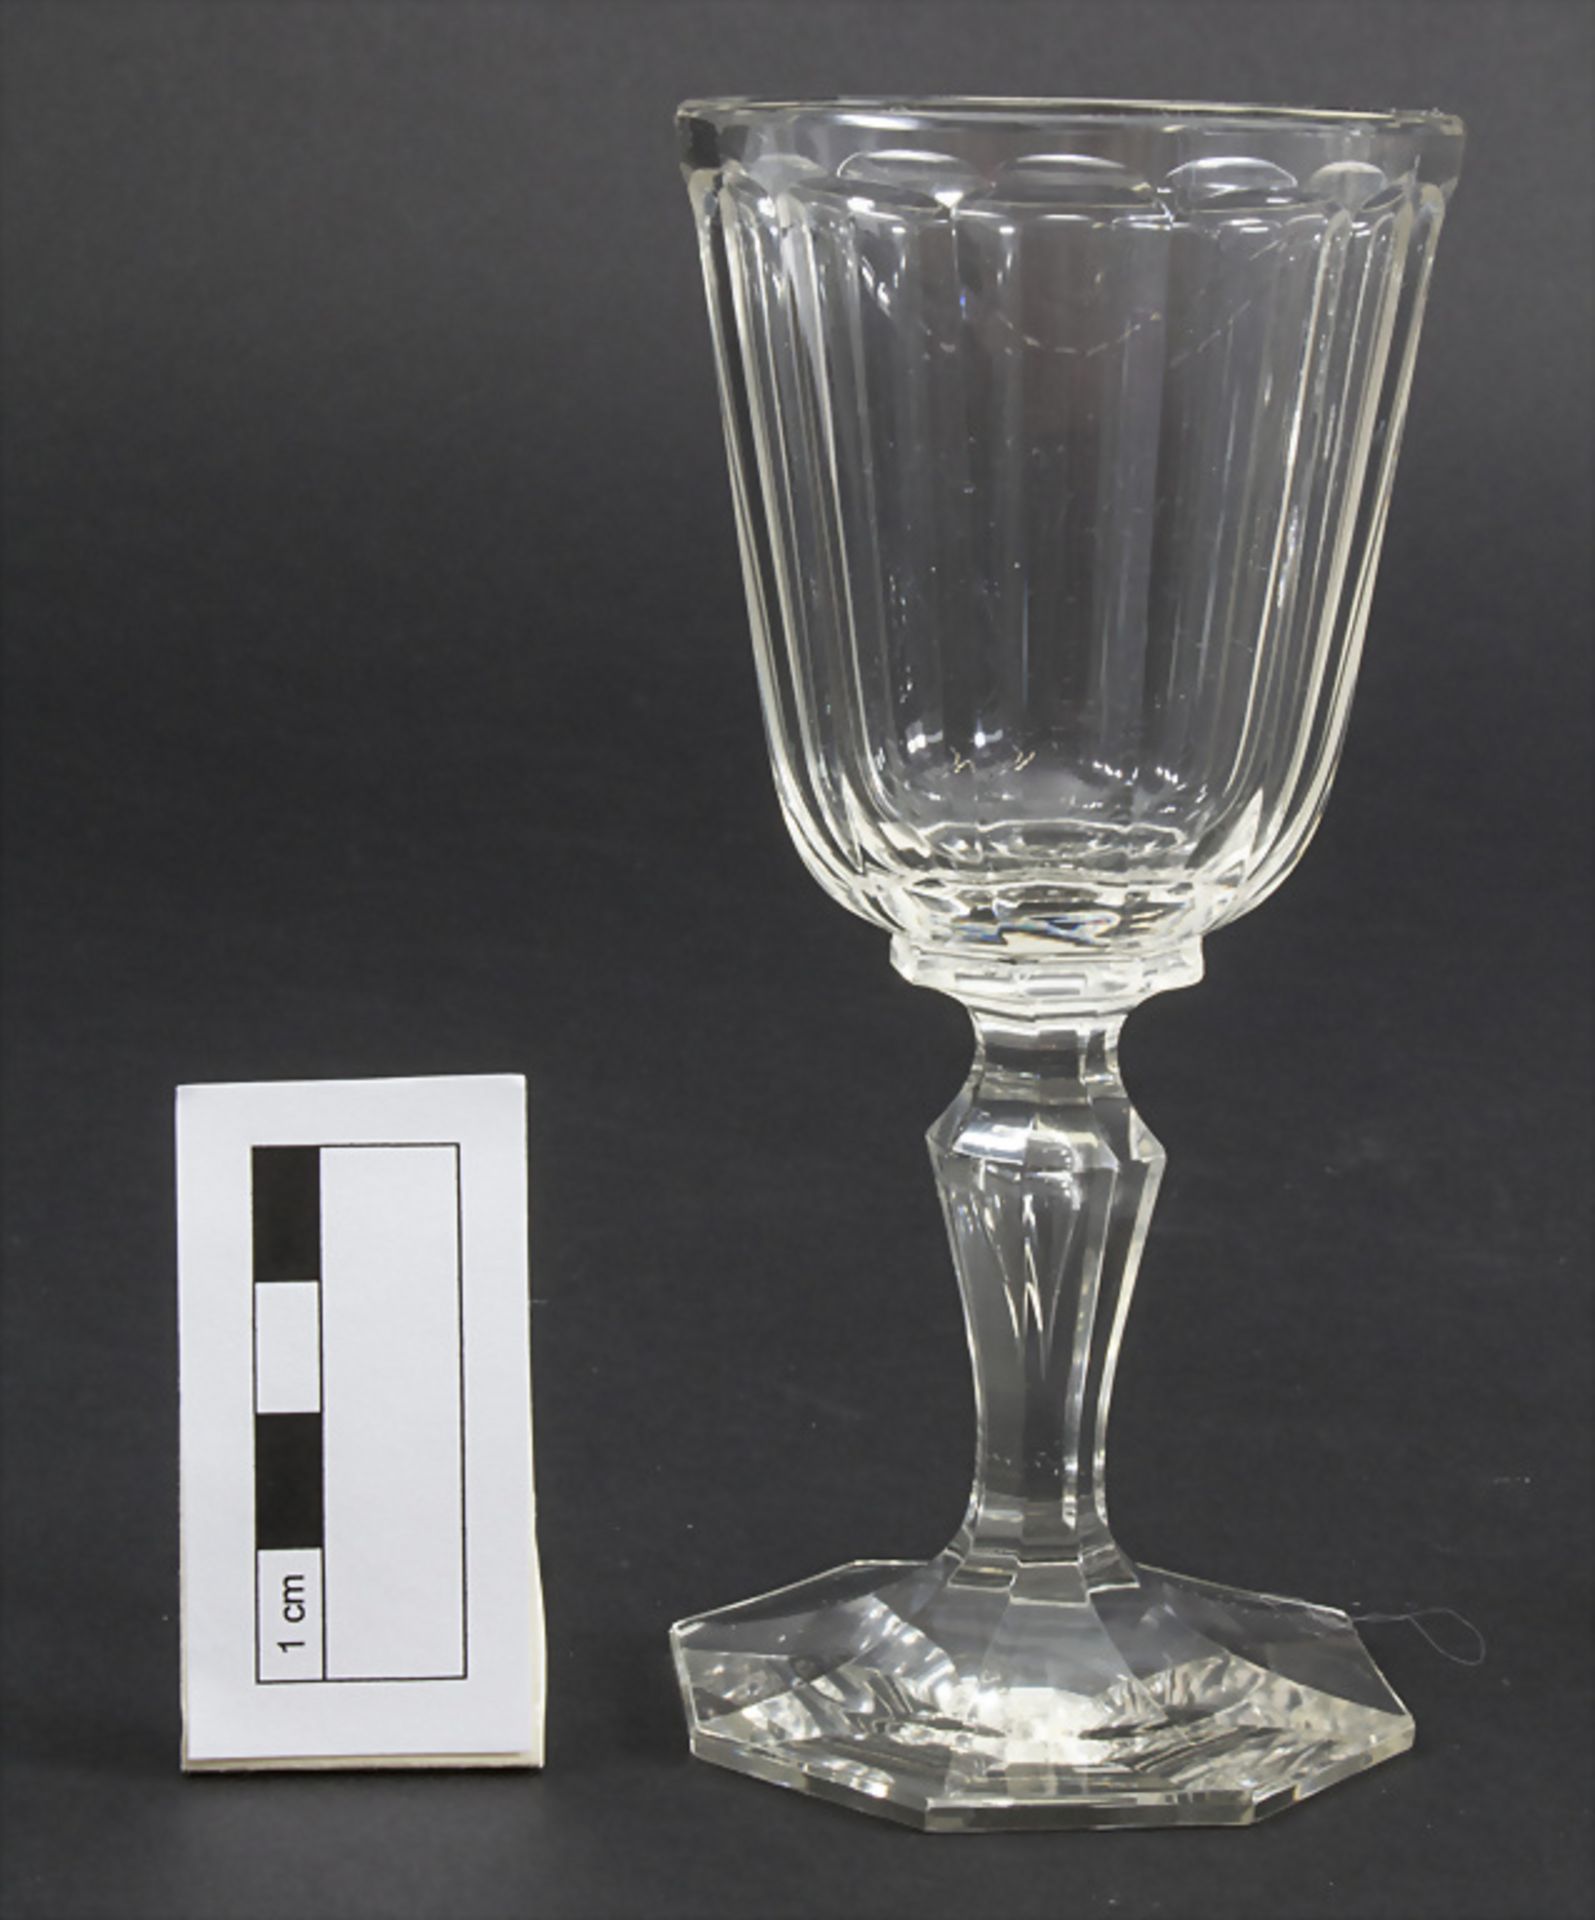 6 Weißweingläser / 6 white wine glasses, J. & L. Lobmeyr, Wien, um 1900 - Bild 2 aus 2